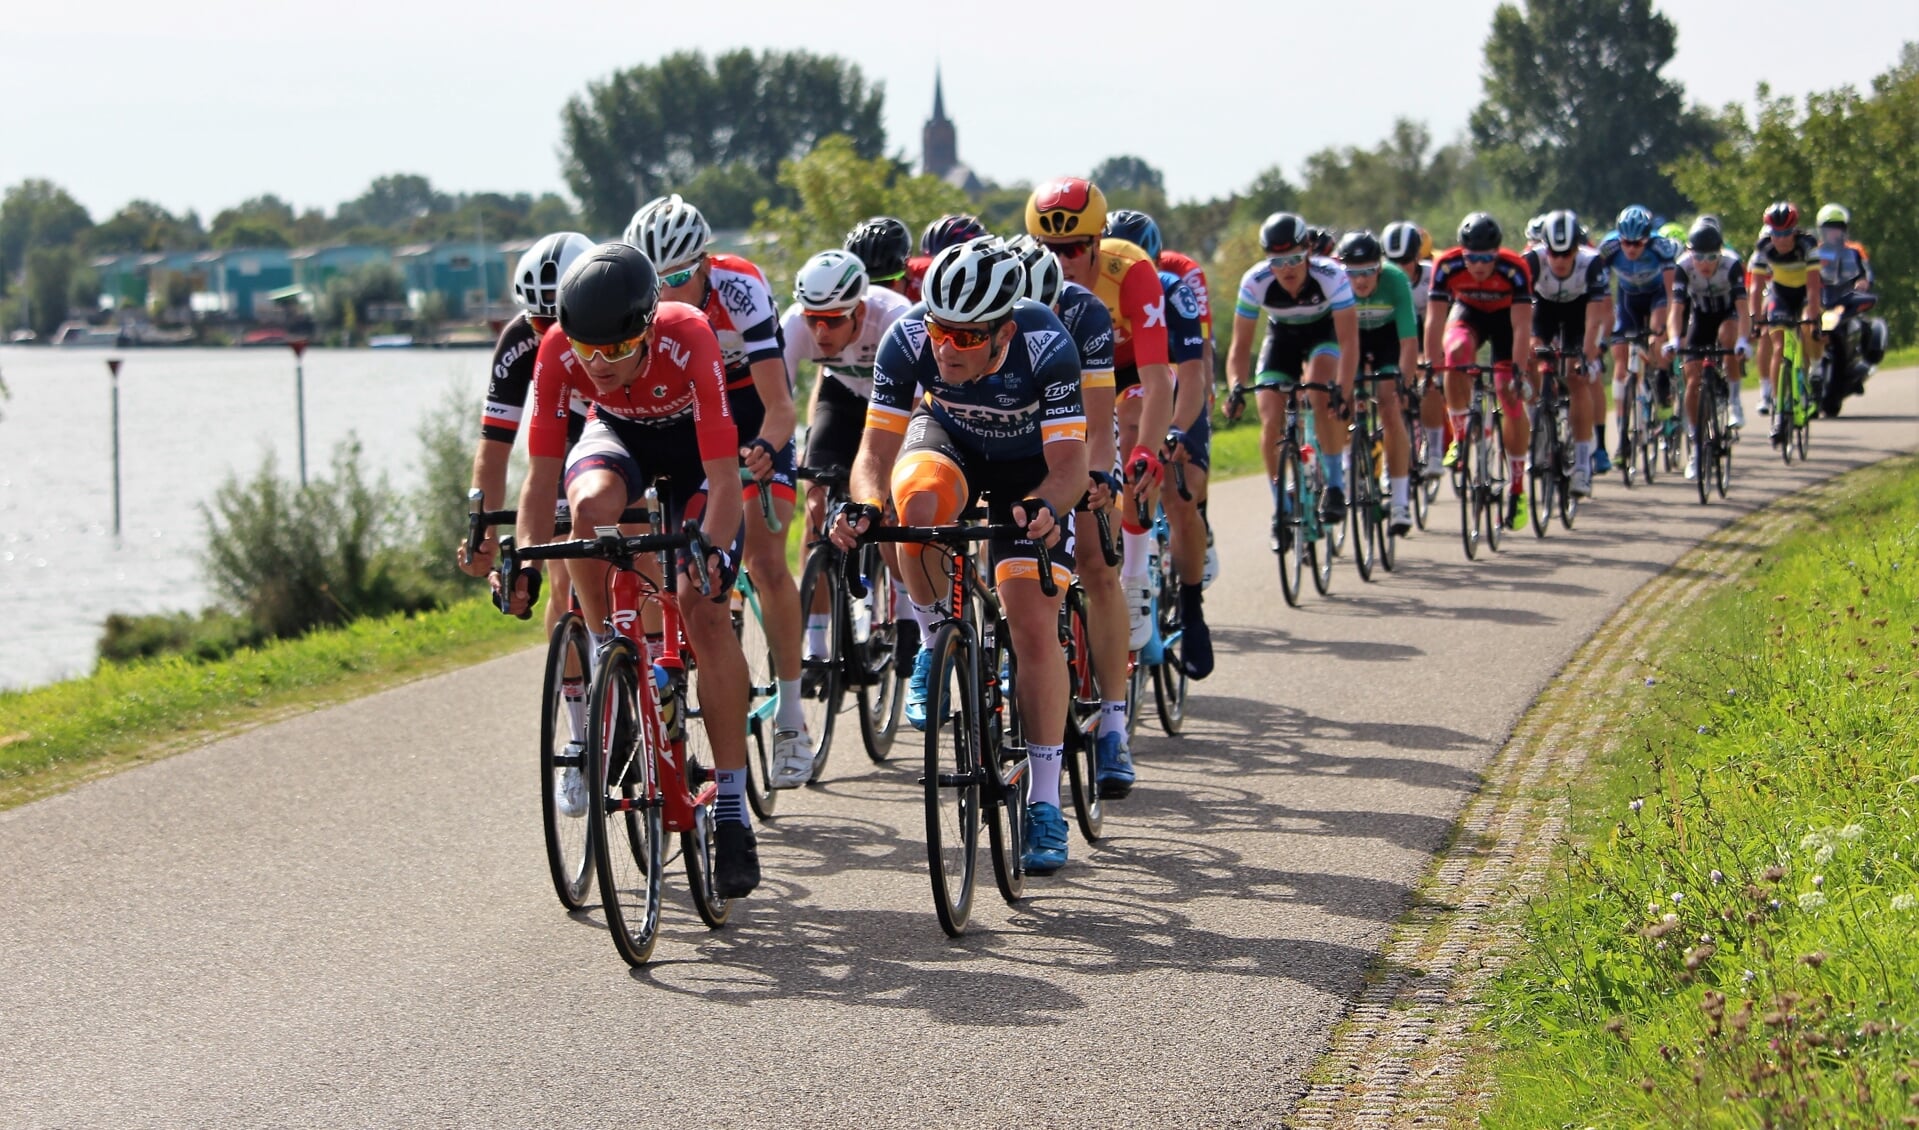 Olympia's Tour door gemeente West Maas en Waal in 2018.